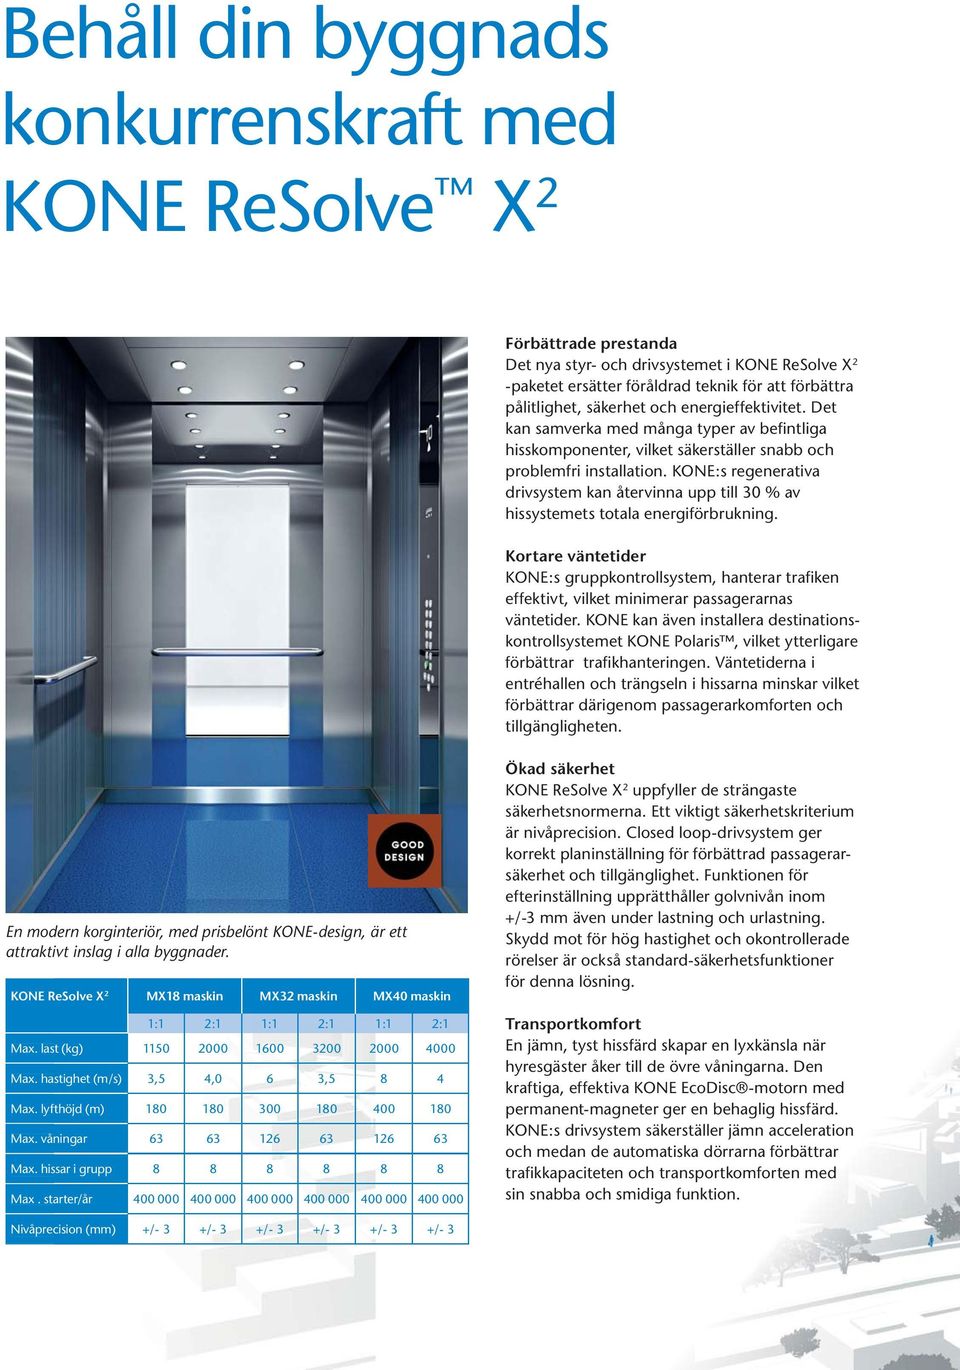 KONE:s regenerativa drivsystem kan återvinna upp till 30 % av hissystemets totala energiförbrukning.